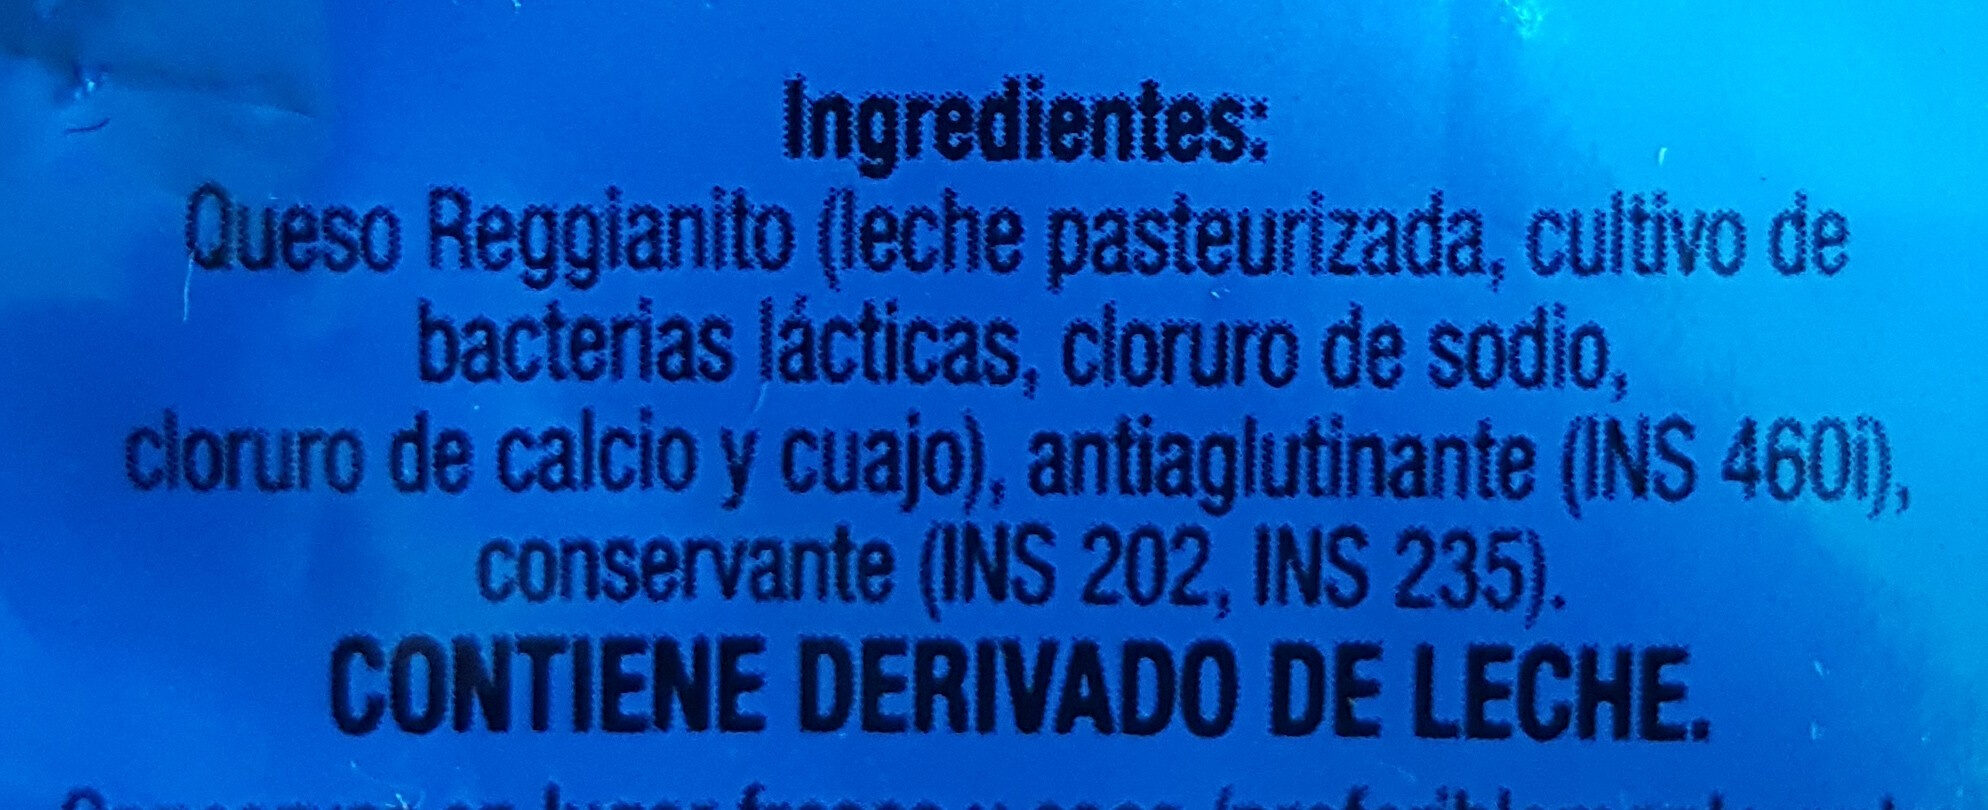 queso rallado reggianito - Ingredients - es